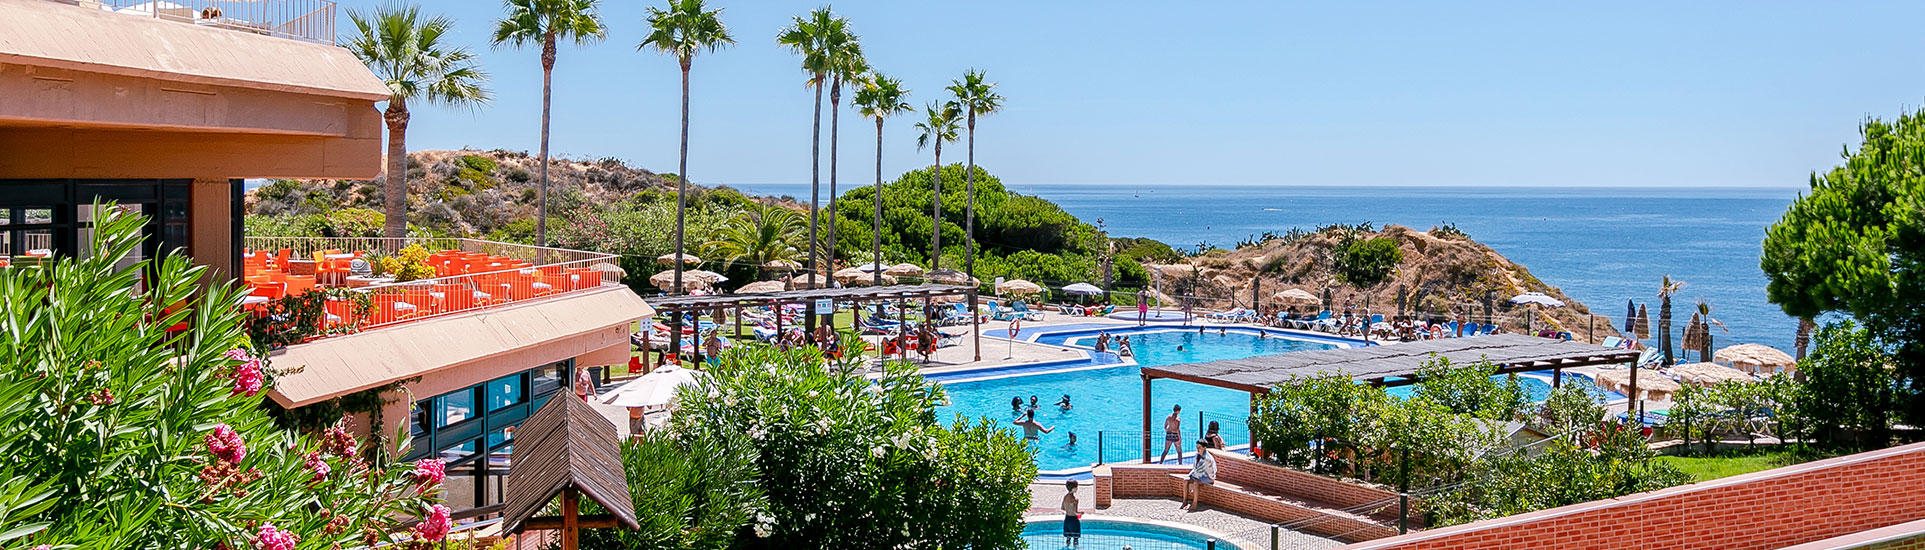 tourhub | Just Go Holidays | Auramar Hotel, Algarve, Portugal – All Inclusive – 21 nights 